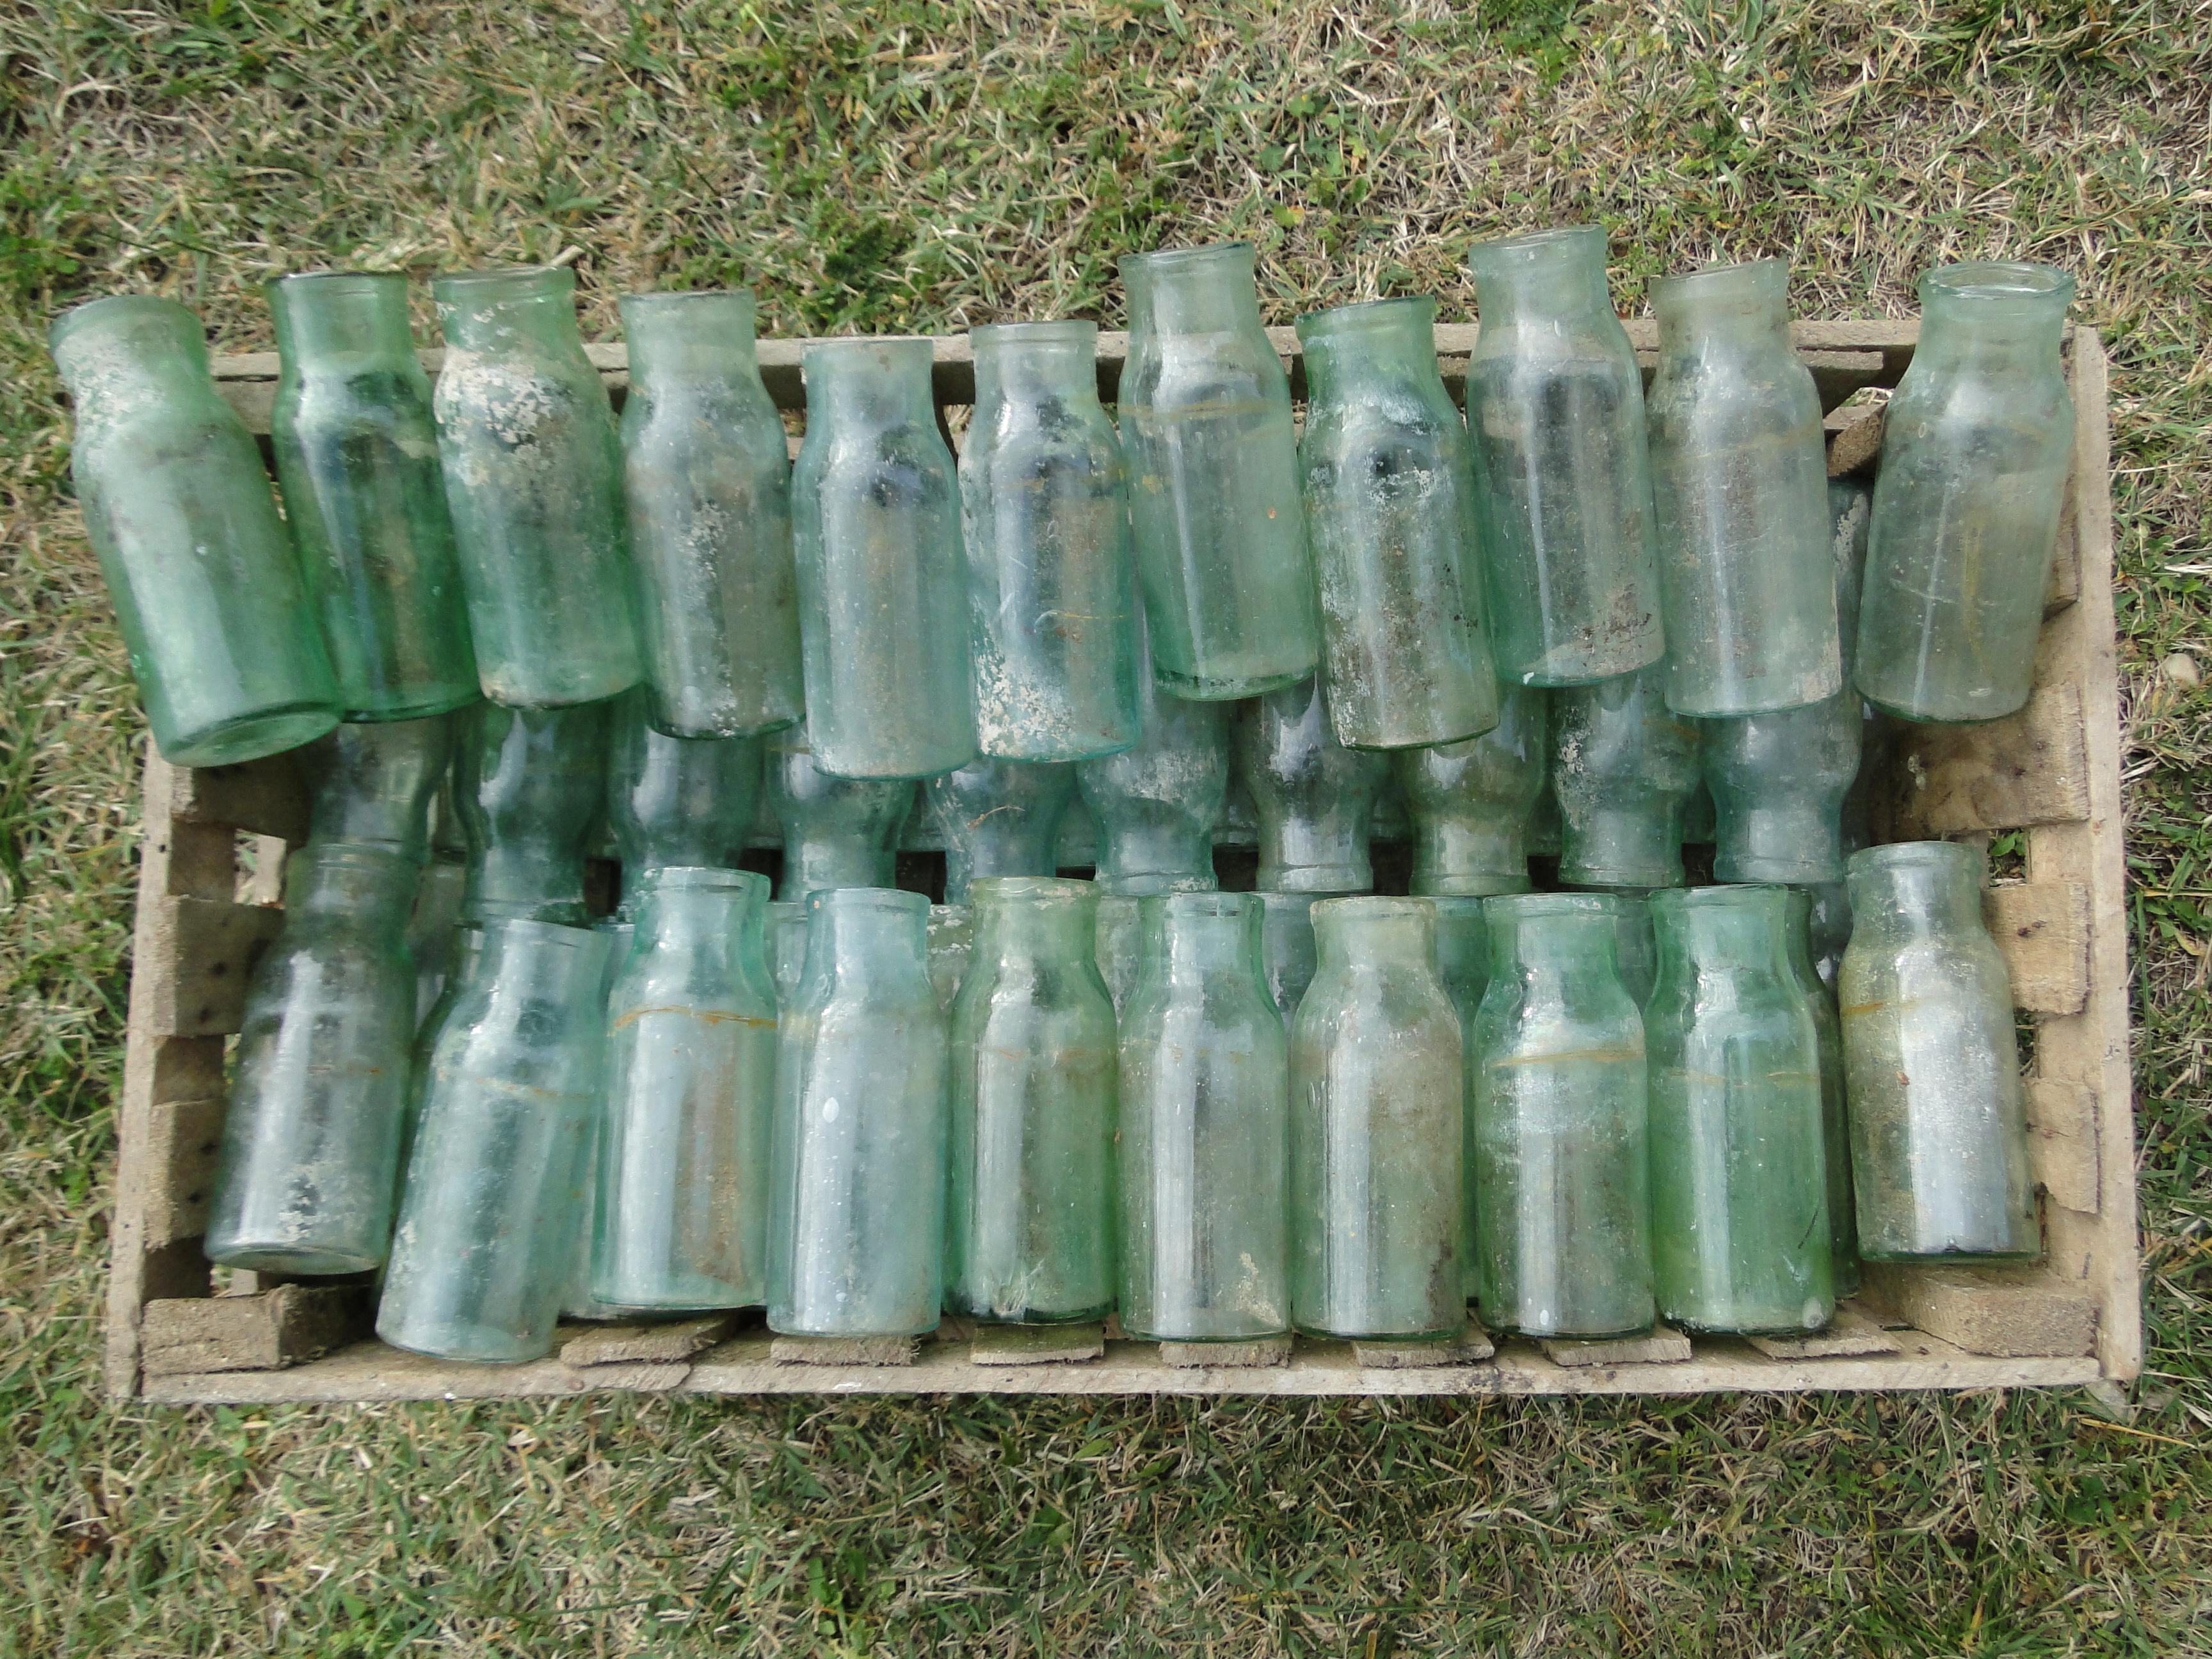 Posten von 10 geblasenen Glasflaschen aus einer Traubenkammer des 19. Jahrhunderts Thomery Moissac


Posten von 10 geblasenen Glasflaschen aus dem 19. Jahrhundert aus Moissac Tarn et Garonne.

Höhe 5,11 Zoll ø 1,57 Zoll und 1,96